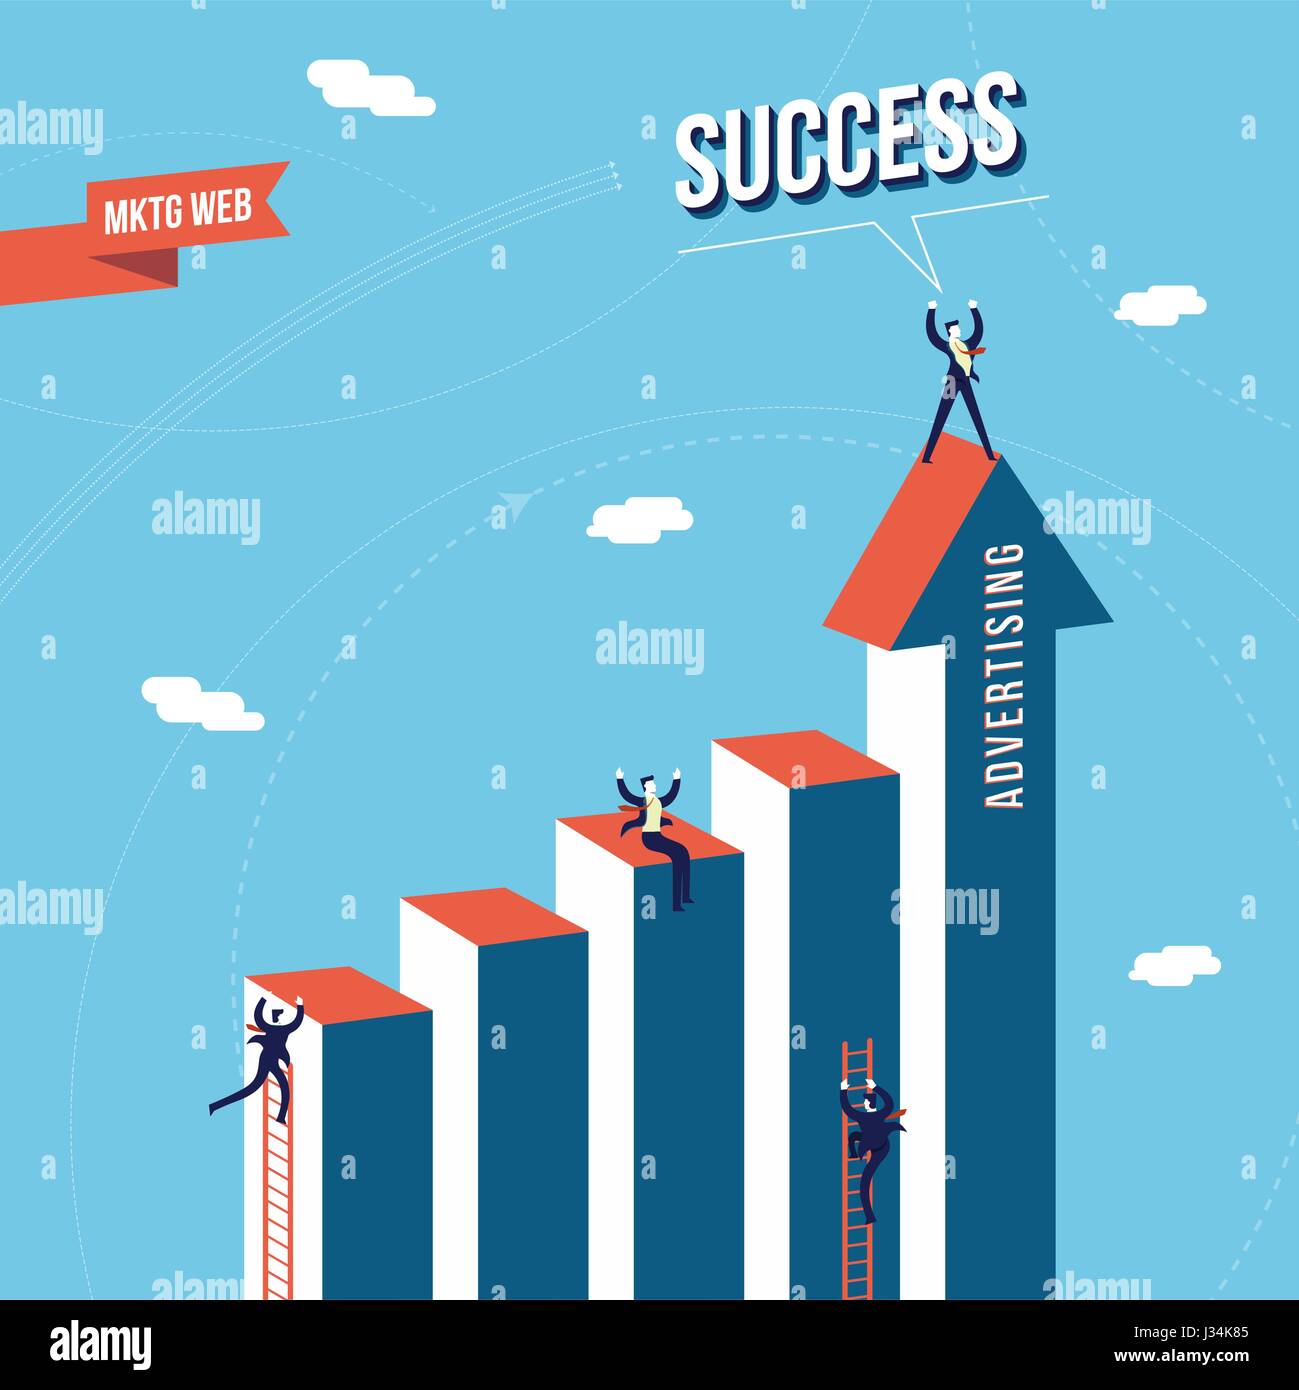 Business-Erfolg-Grafik mit Geschäftsmann Team, Web-Marketing und Werbung Illustration Konzept. EPS10 Vektor. Stock Vektor